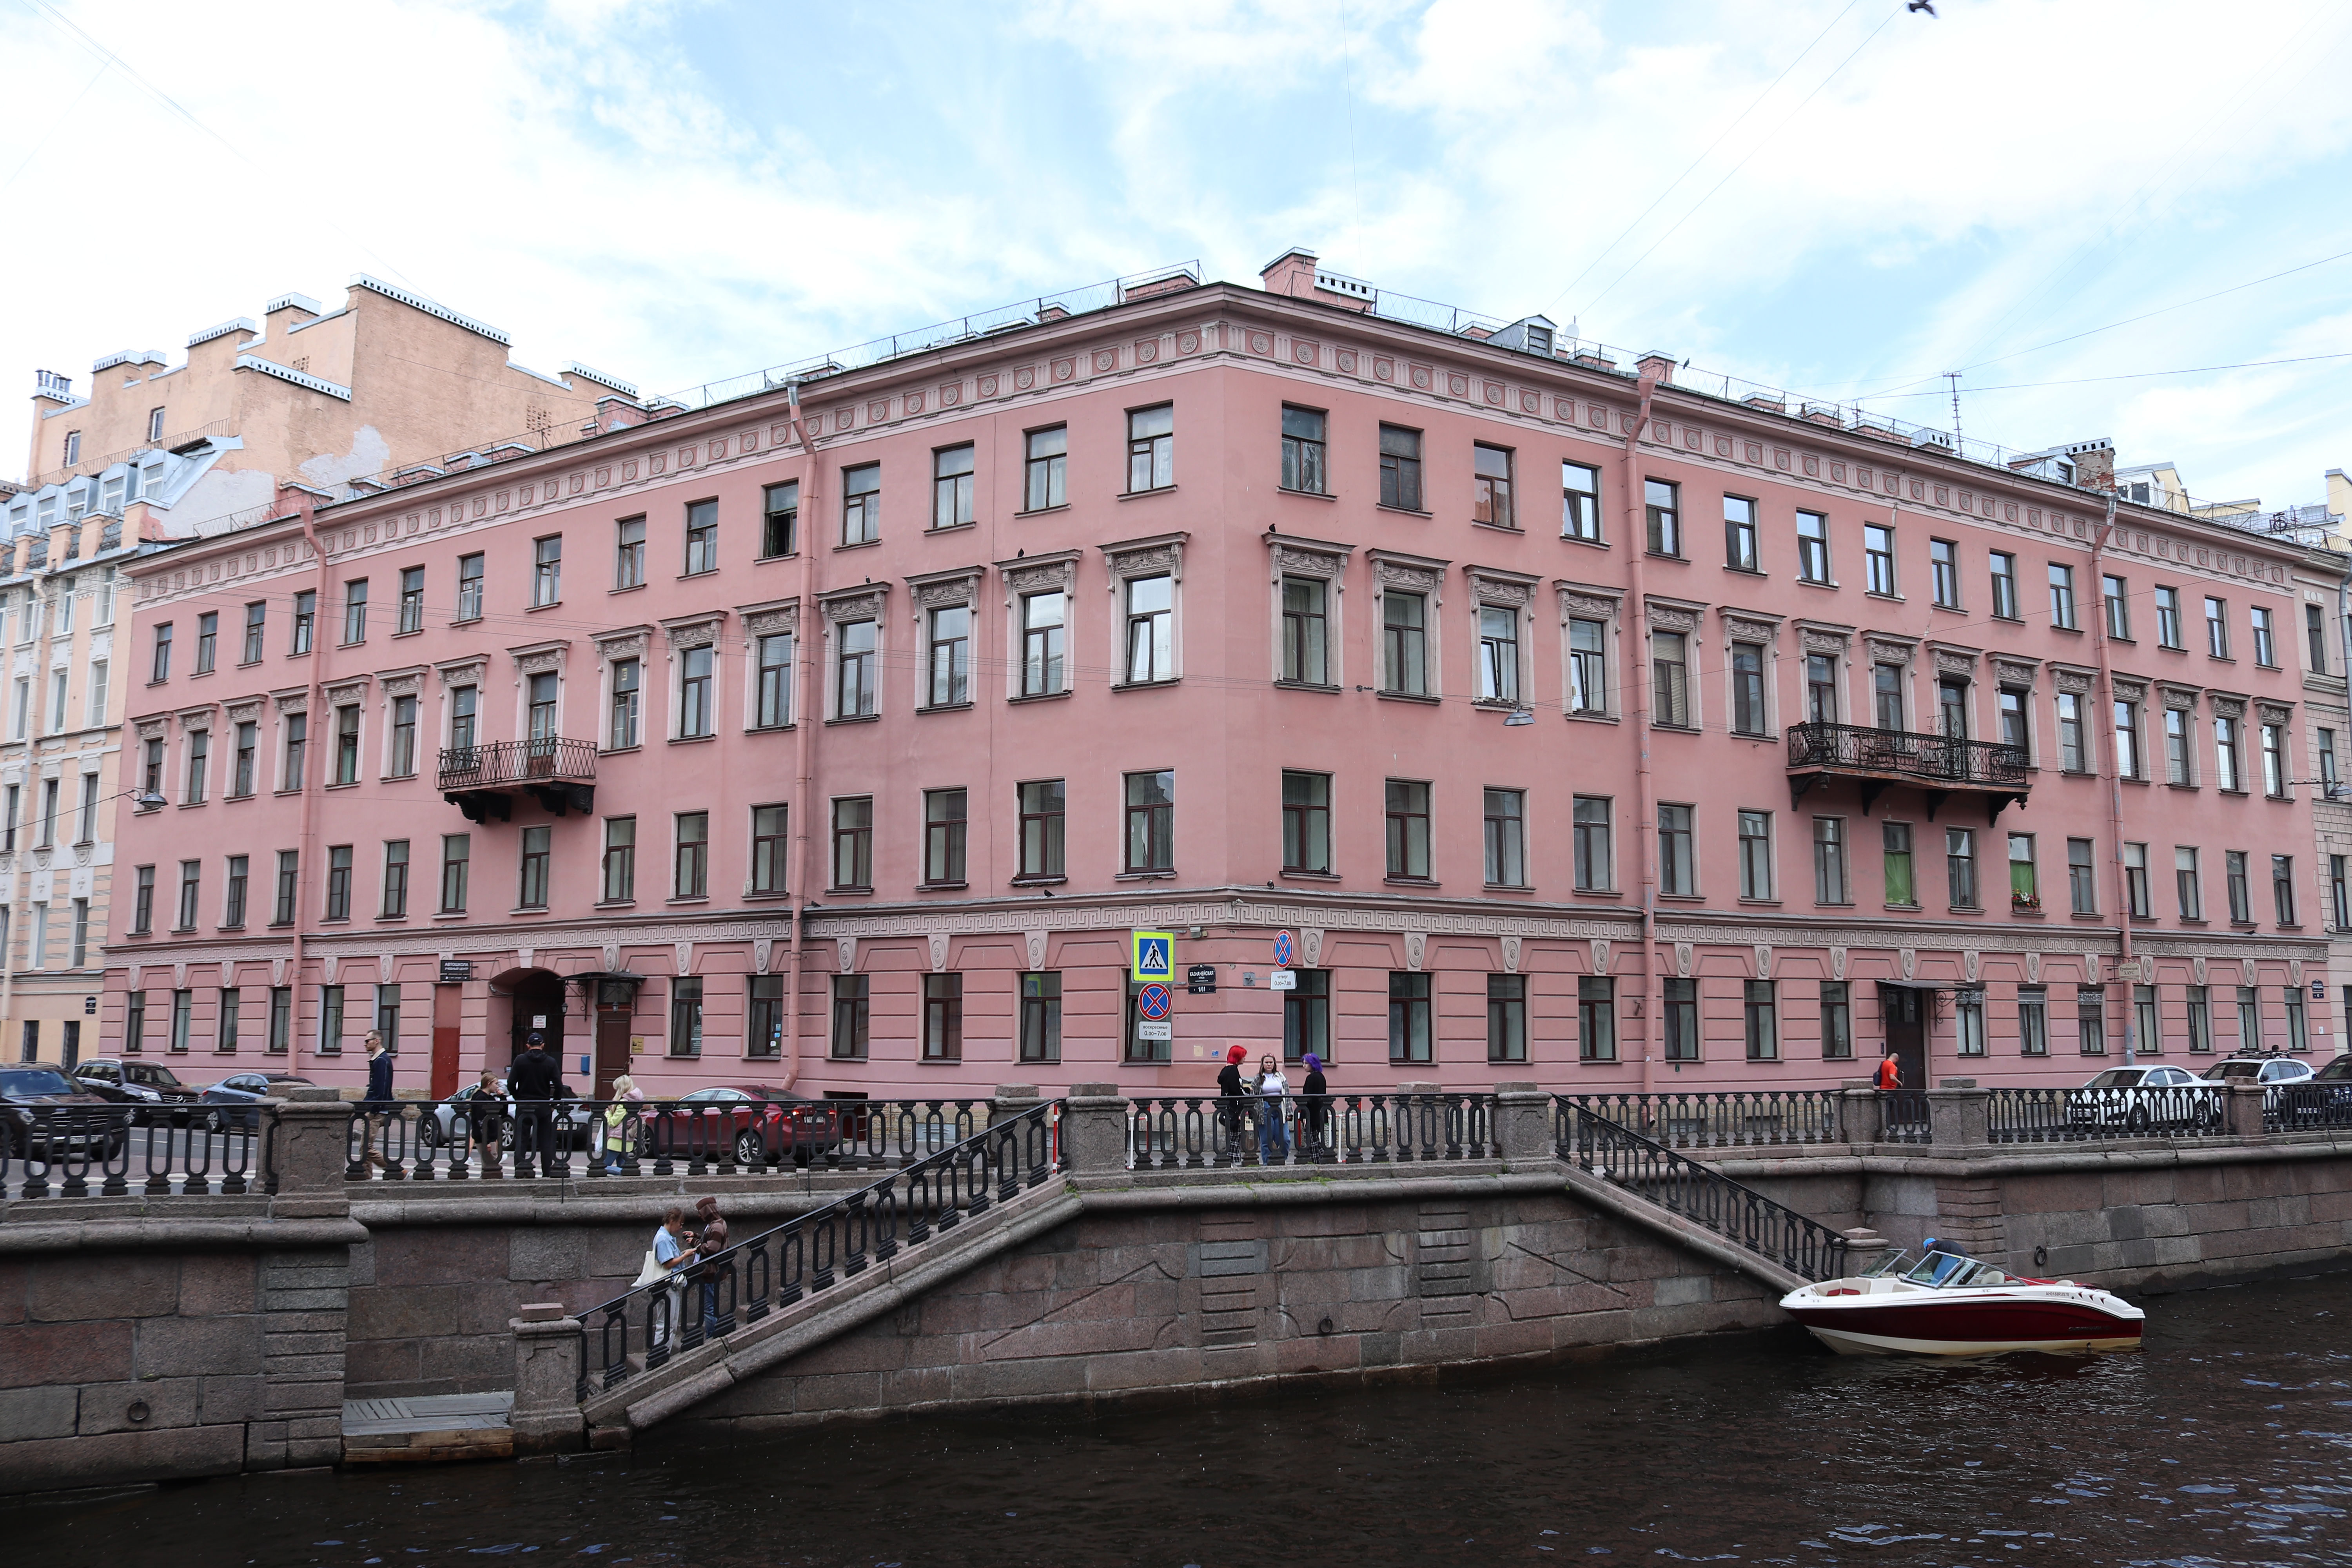 Аттестация гидов стартует в Санкт‑Петербурге